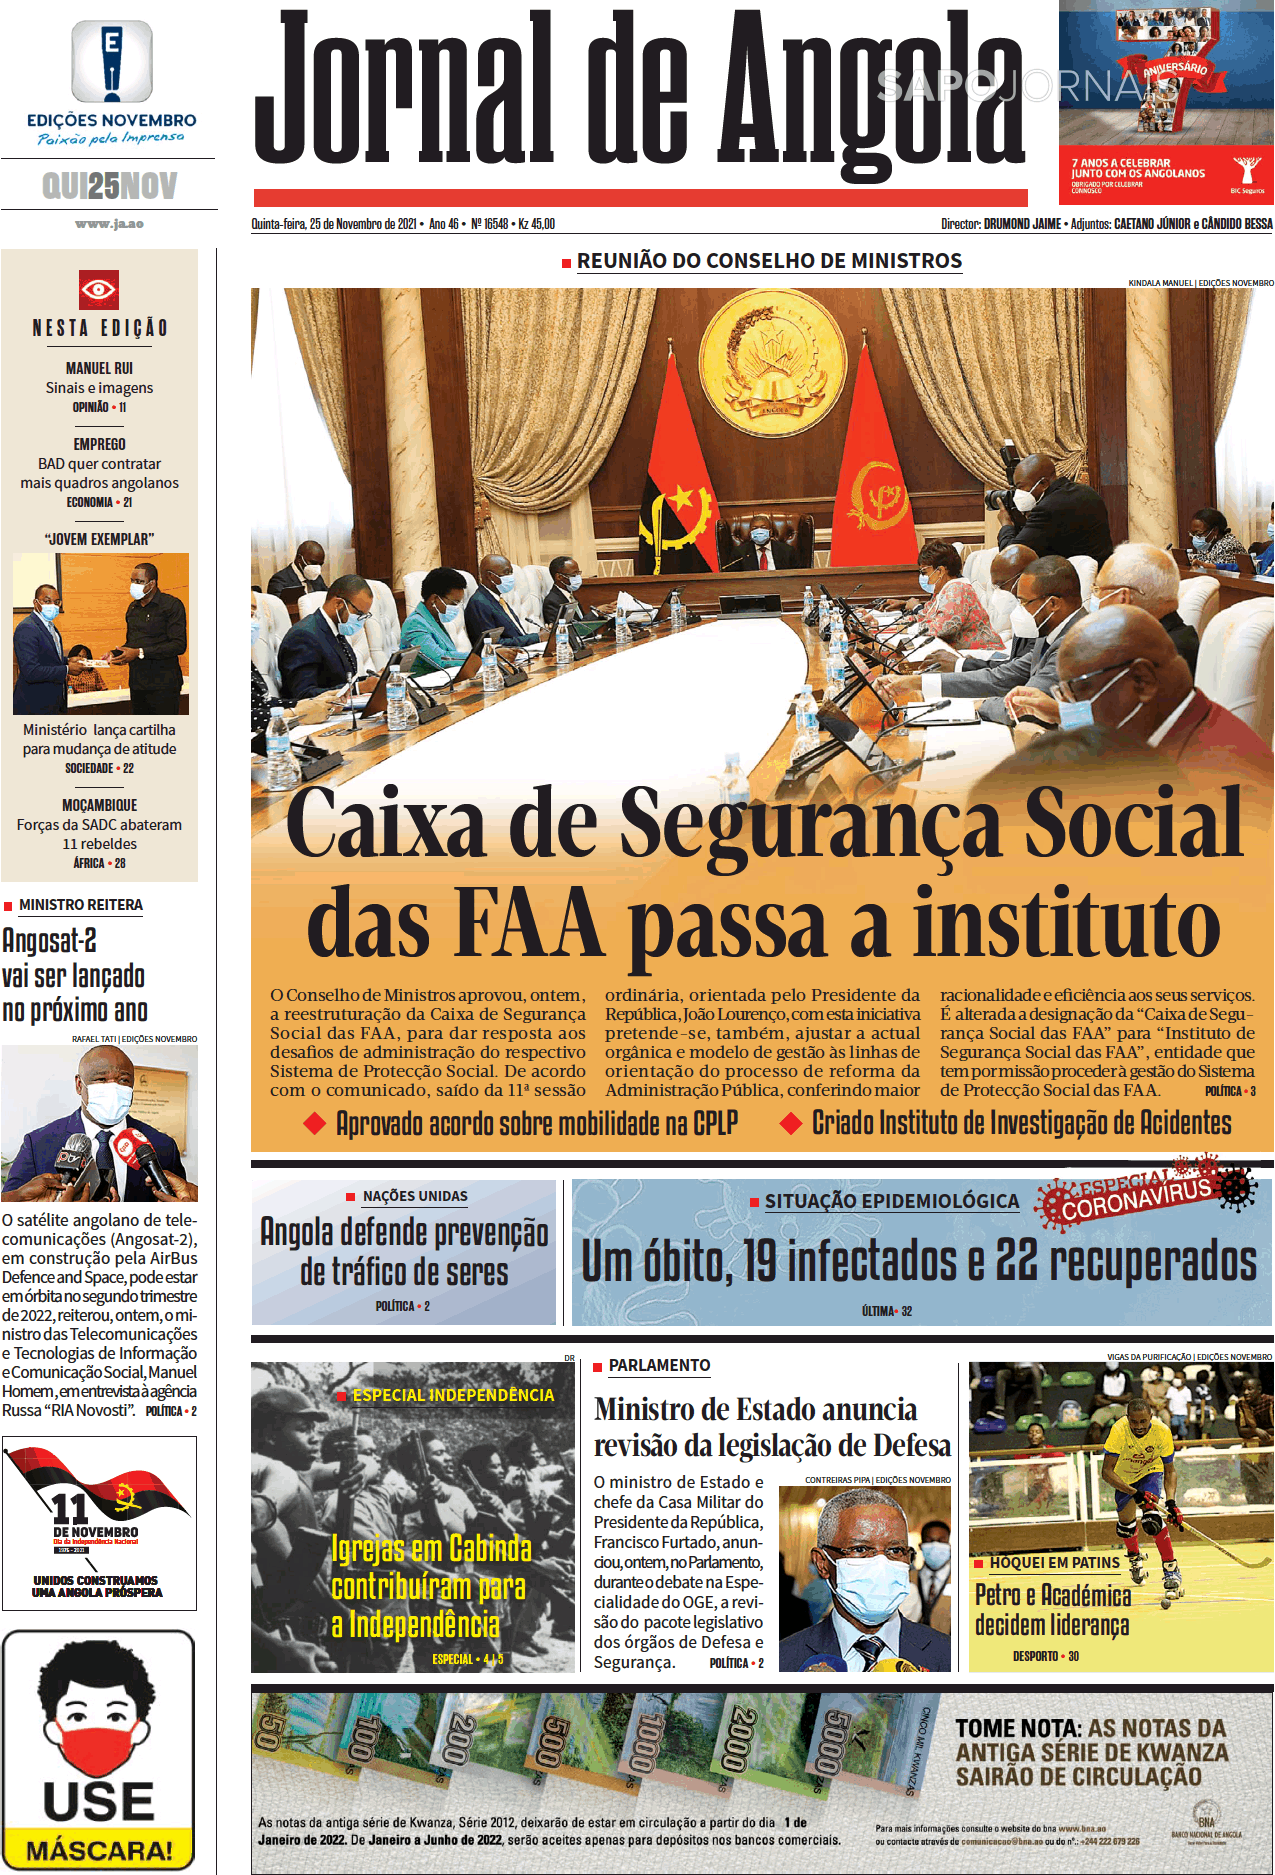 Jornal De Angola Nov Jornais E Revistas Sapo Pt Ltima Hora E Not Cias De Hoje